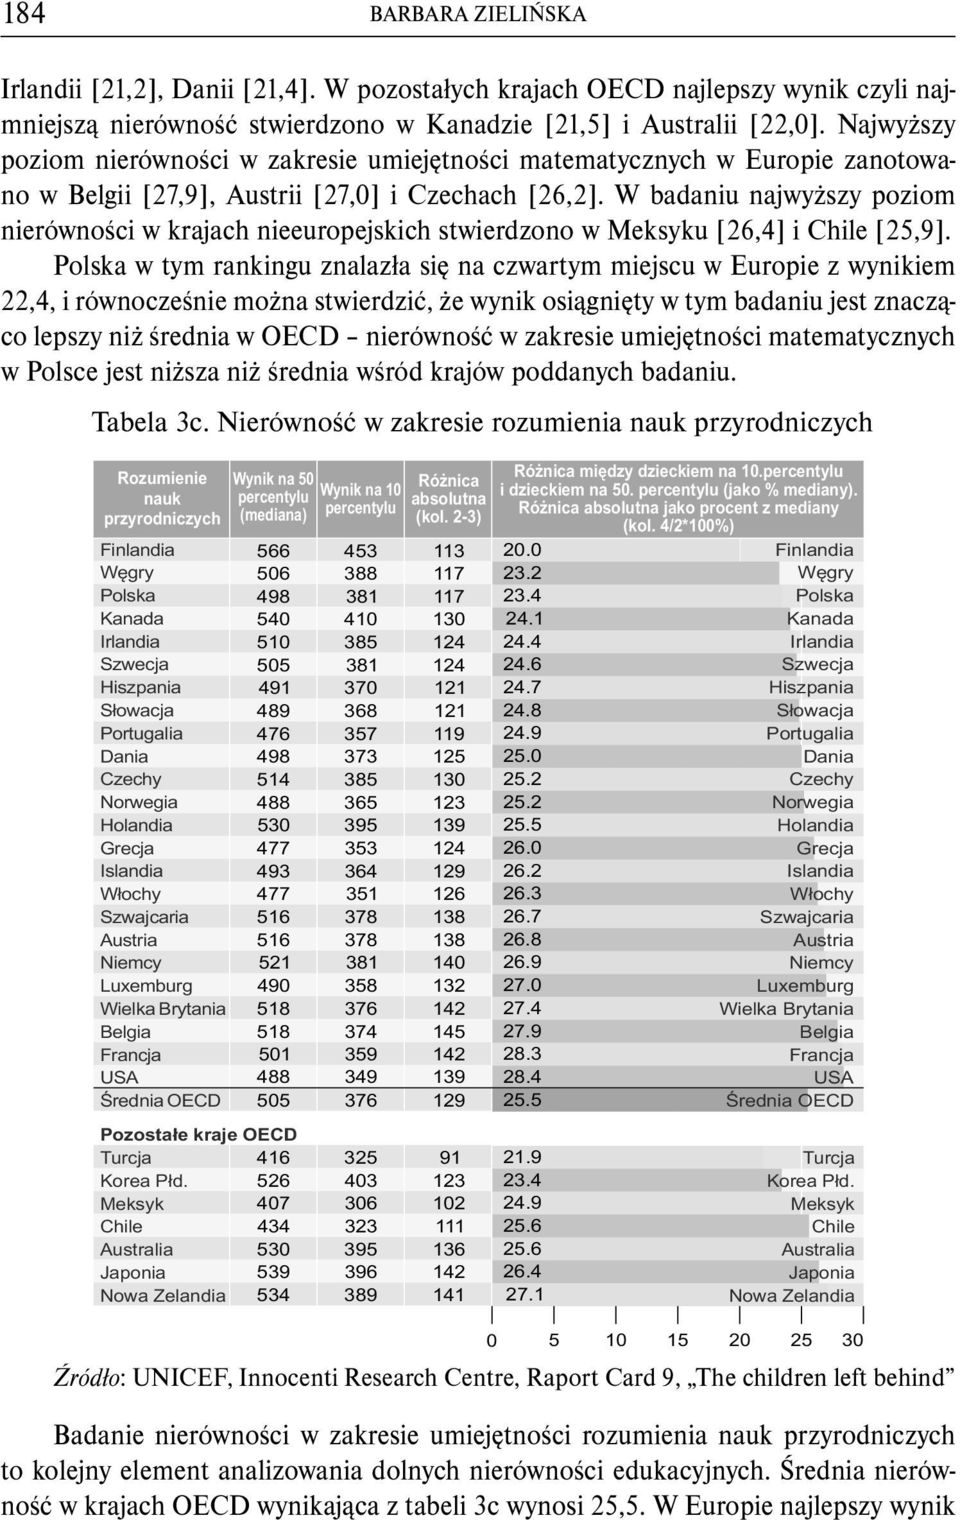 W badaniu najwyższy poziom nierówności w krajach nieeuropejskich stwierdzono w Meksyku [26,4] i Chile [25,9].